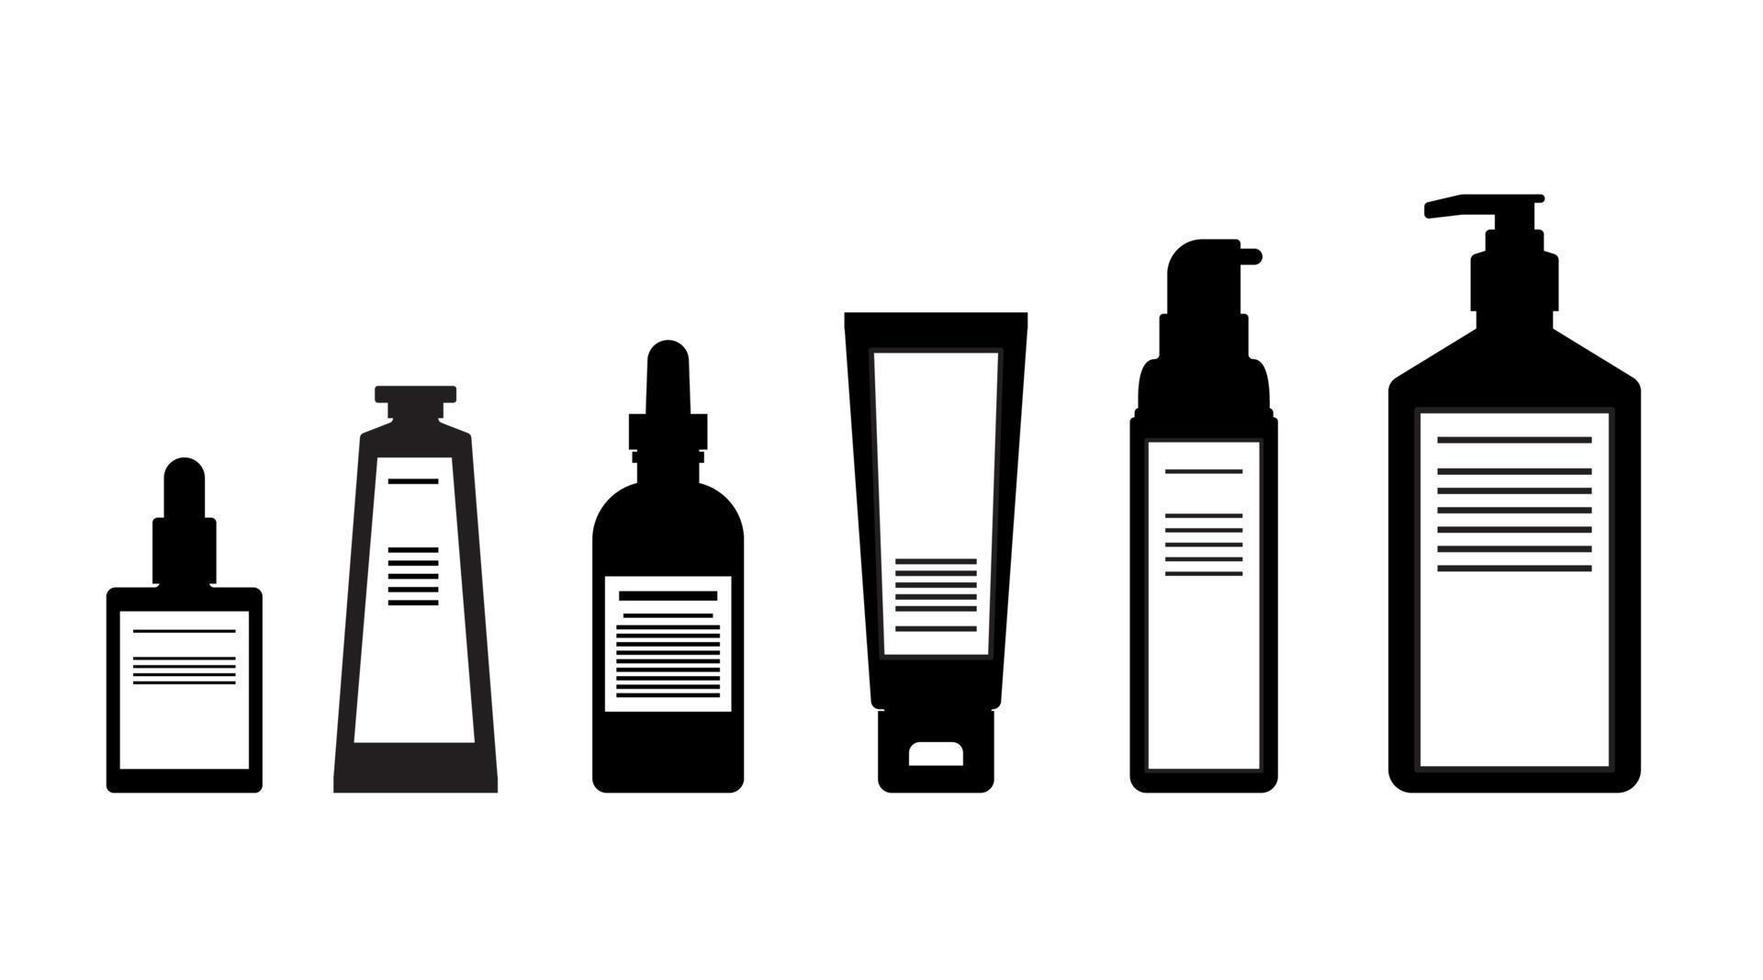 lociones corporales de silueta, suero, bomba para el cuidado de la piel, botella de embalaje diseño plano cosmético vector